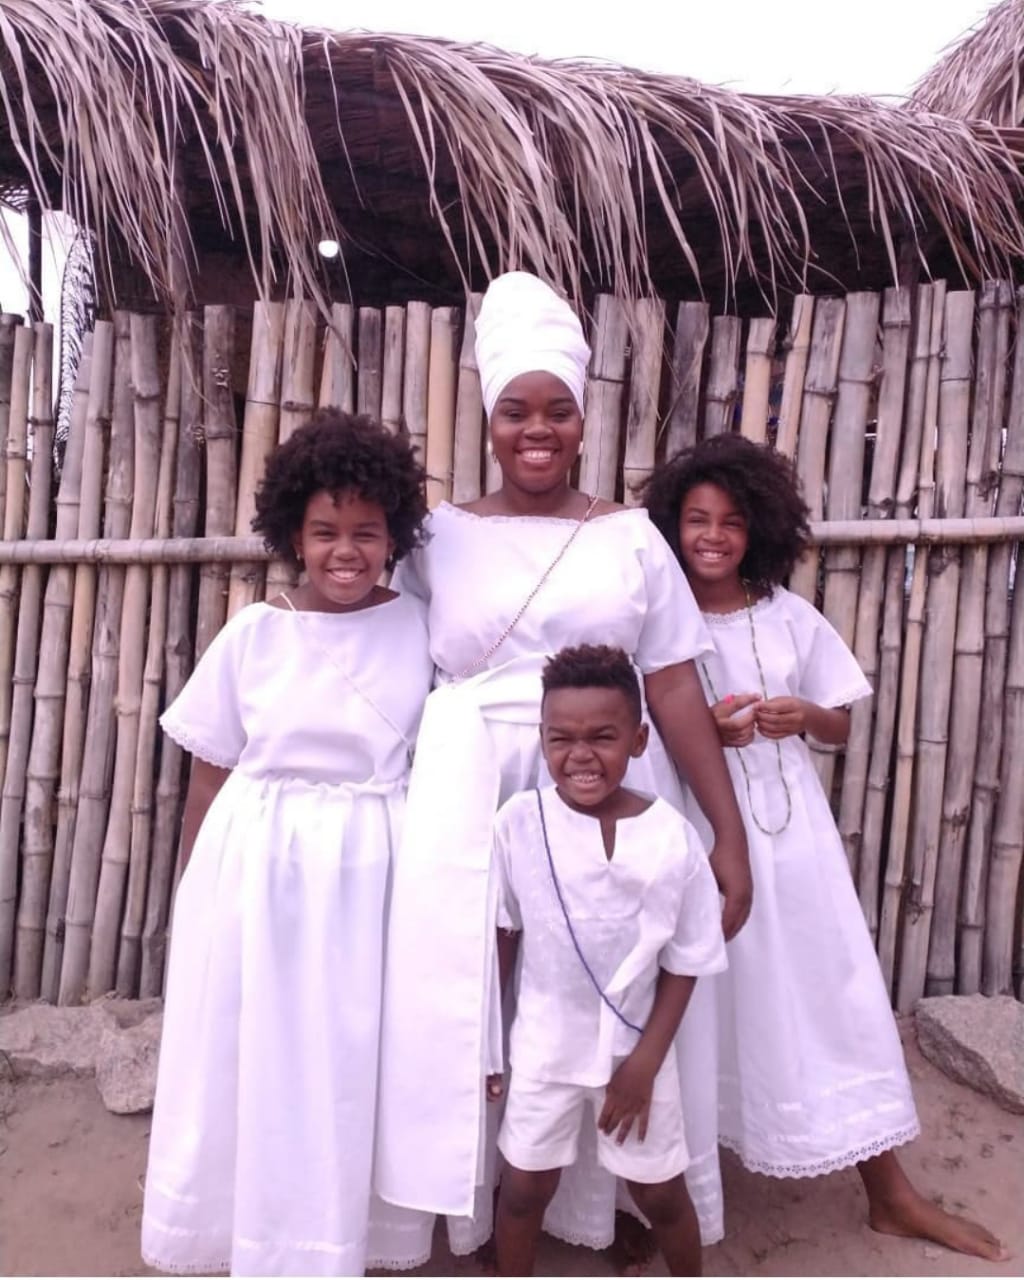 Uma mulher negra vestida de branco com seus três filhos (duas meninas e um menino), todos também vestidos de branco